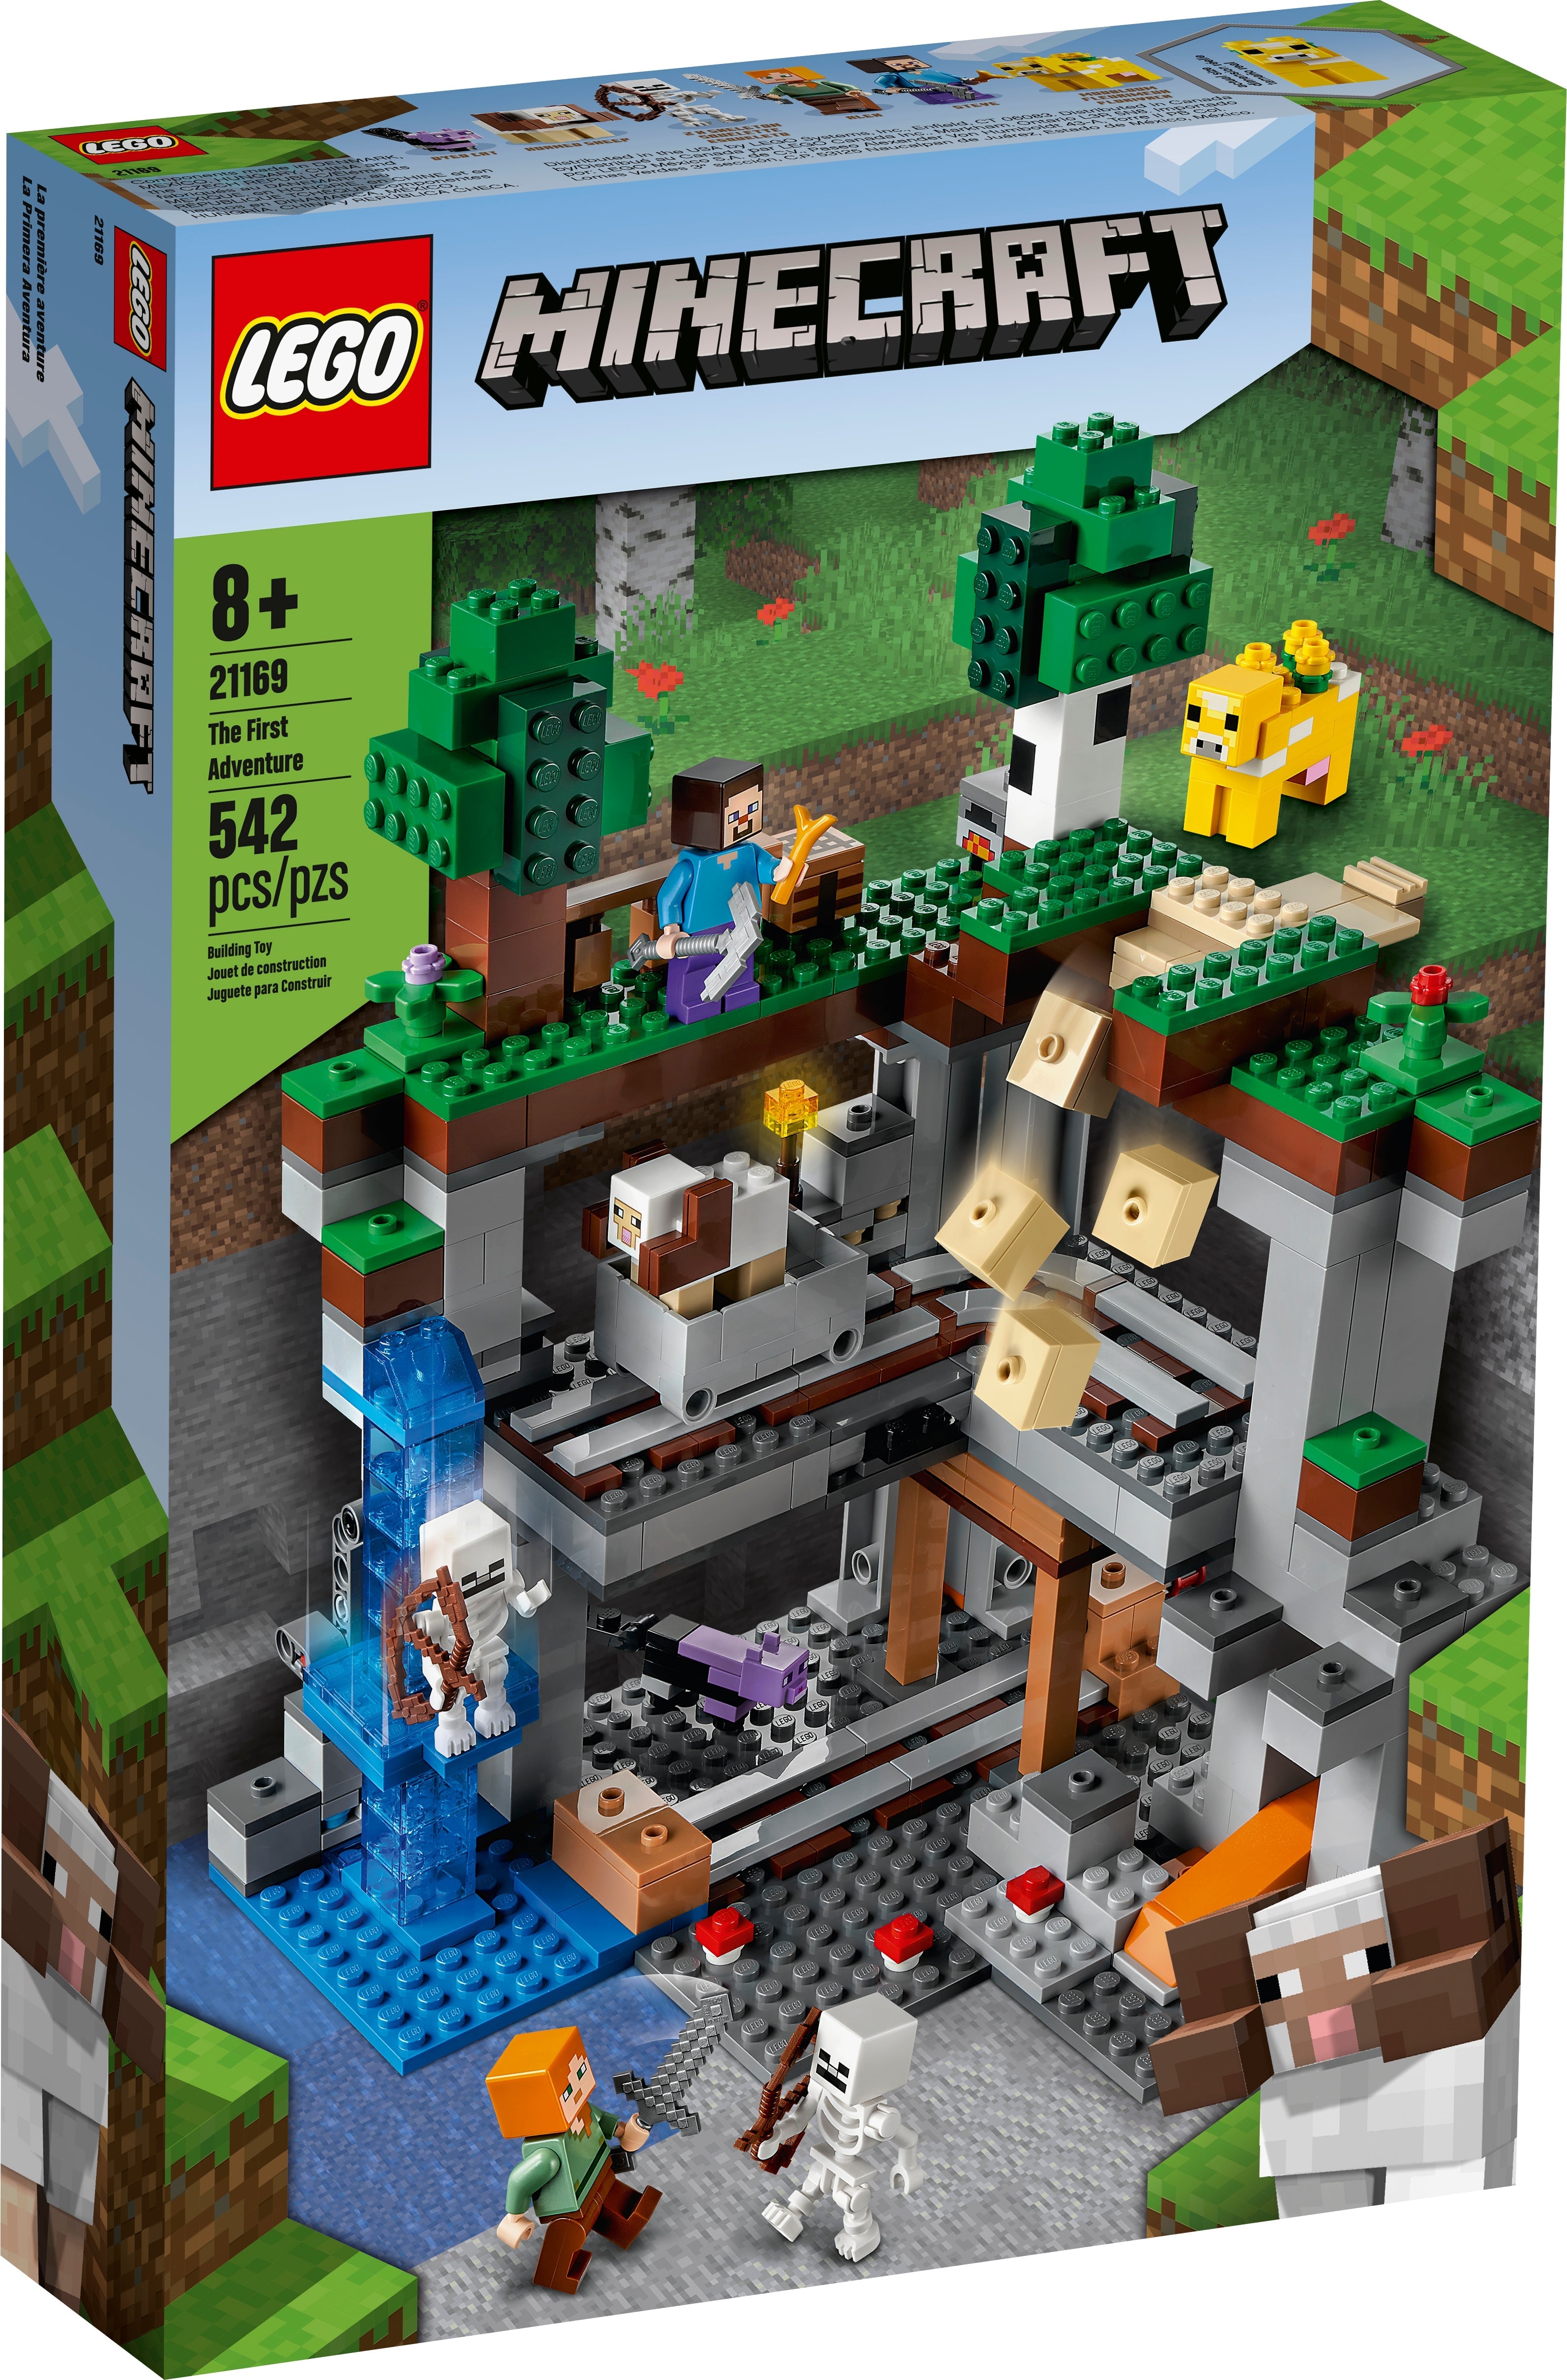 LEGO Minecraft Das erste Abenteuer (21169) - im GOLDSTIEN.SHOP verfügbar mit Gratisversand ab Schweizer Lager! (5702016913873)